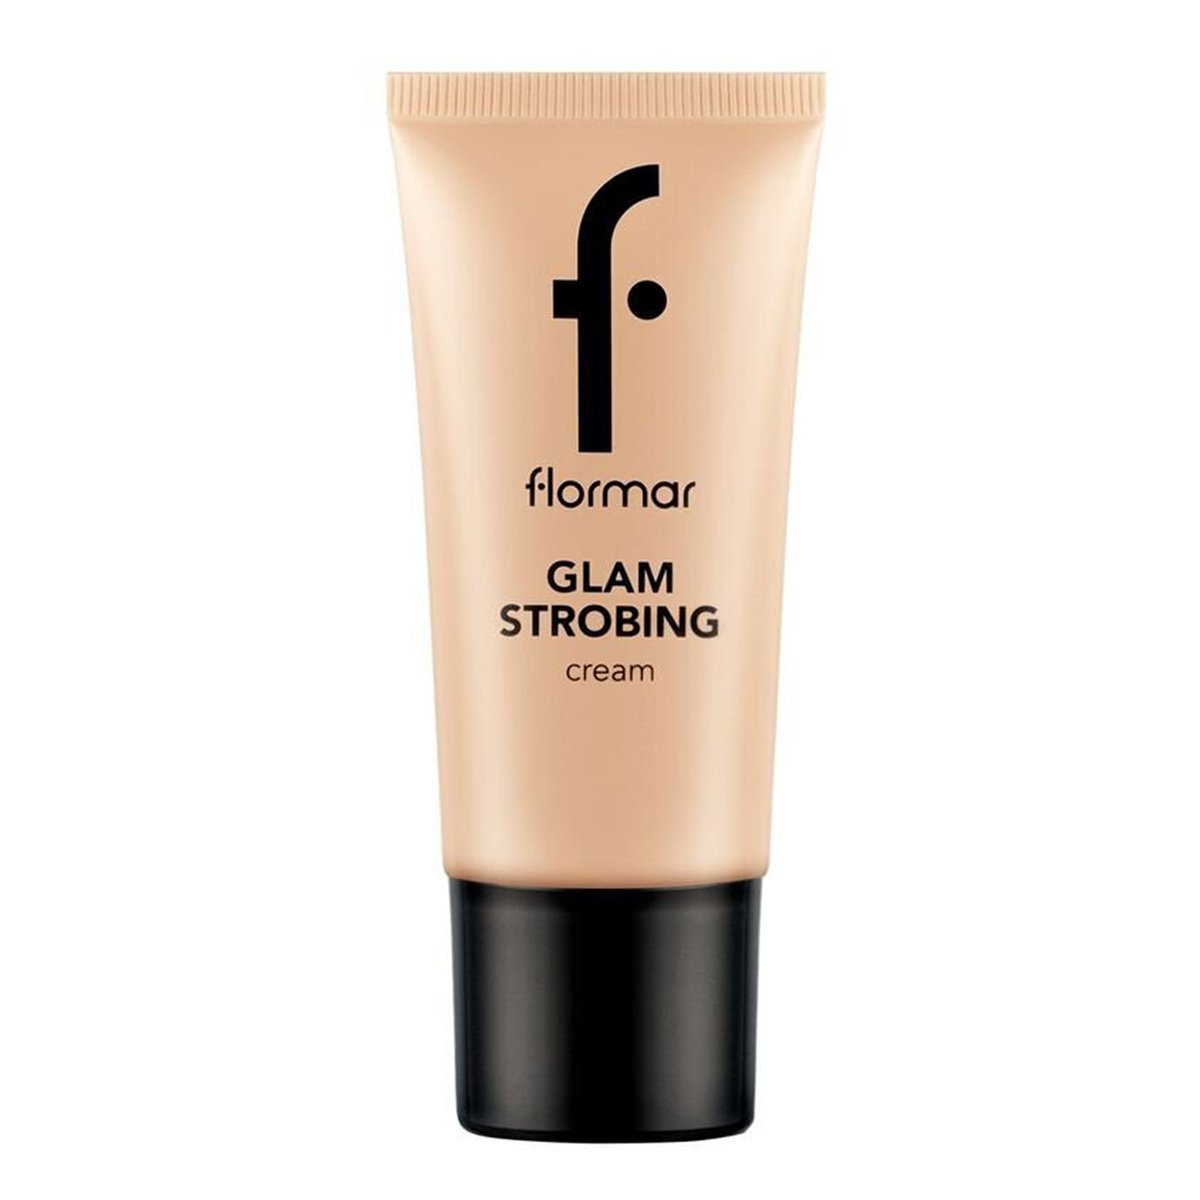 Flormar Glam Strobing Cream, Peach